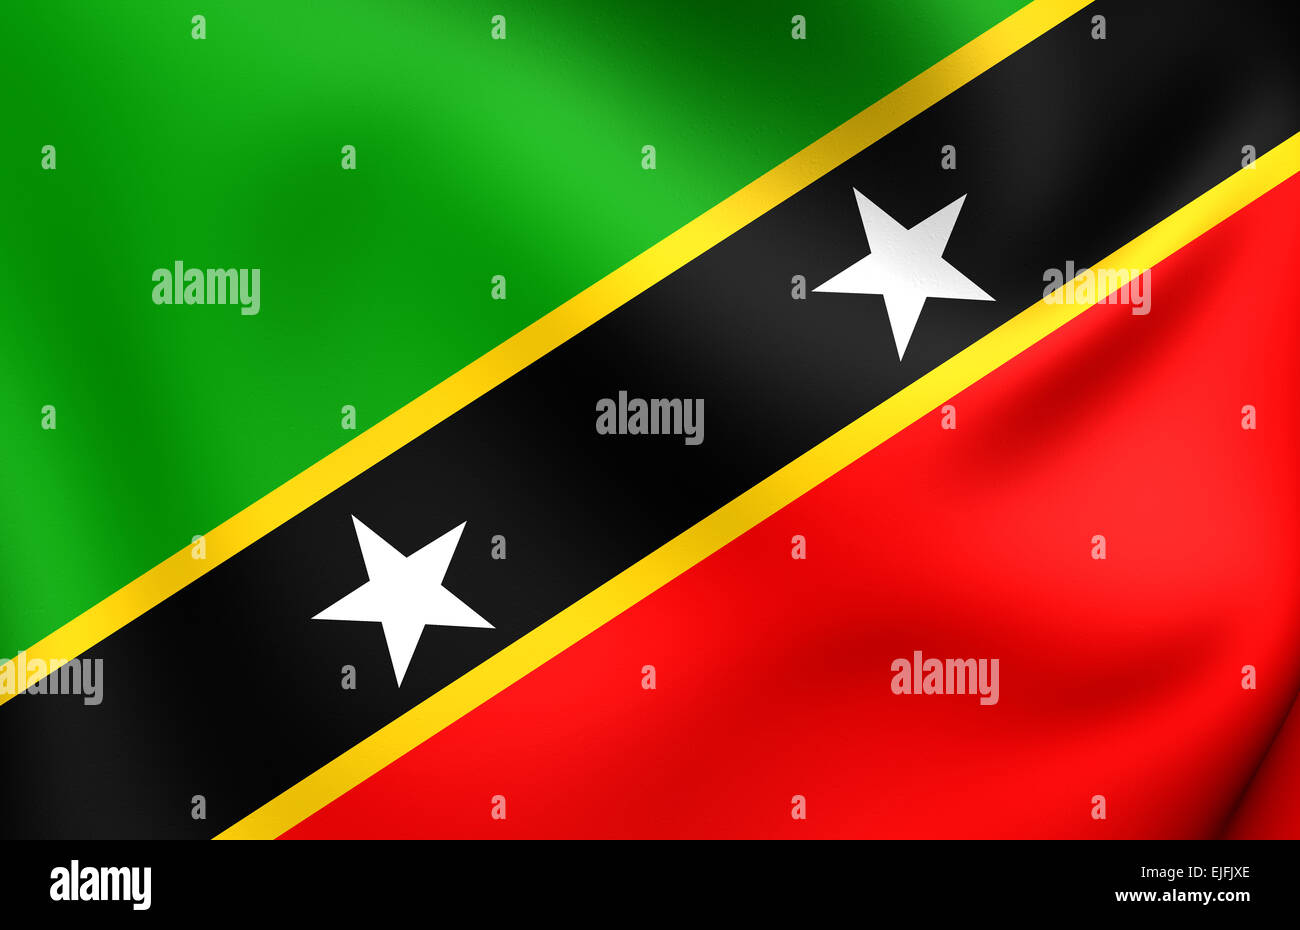 Föderation Saint Kitts und Nevis-Flagge. Hautnah. Stockfoto